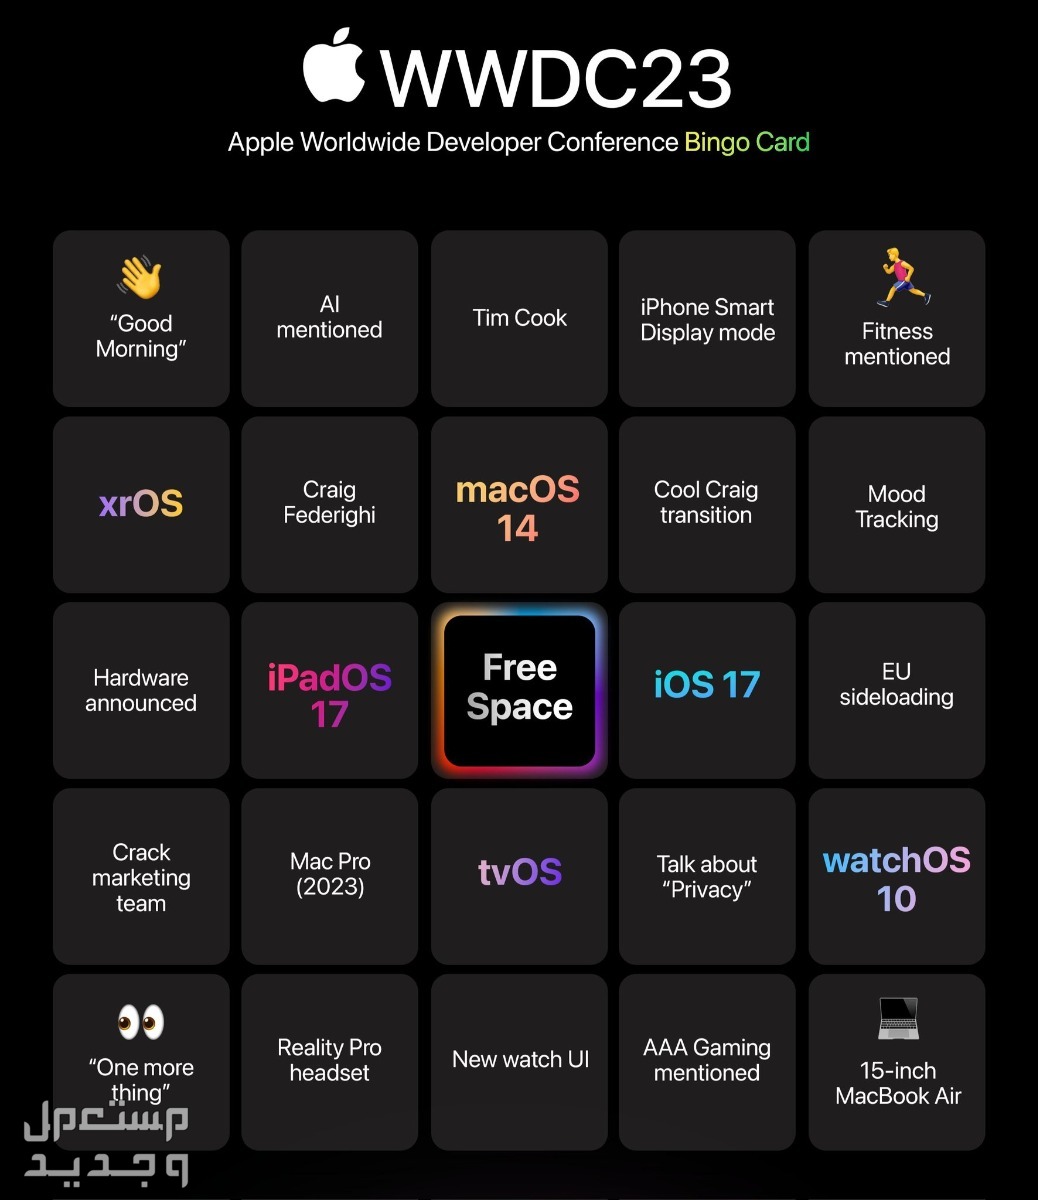 ما الجديد الذي يقدمه نظام ابل الجديد iOS 17 في موريتانيا